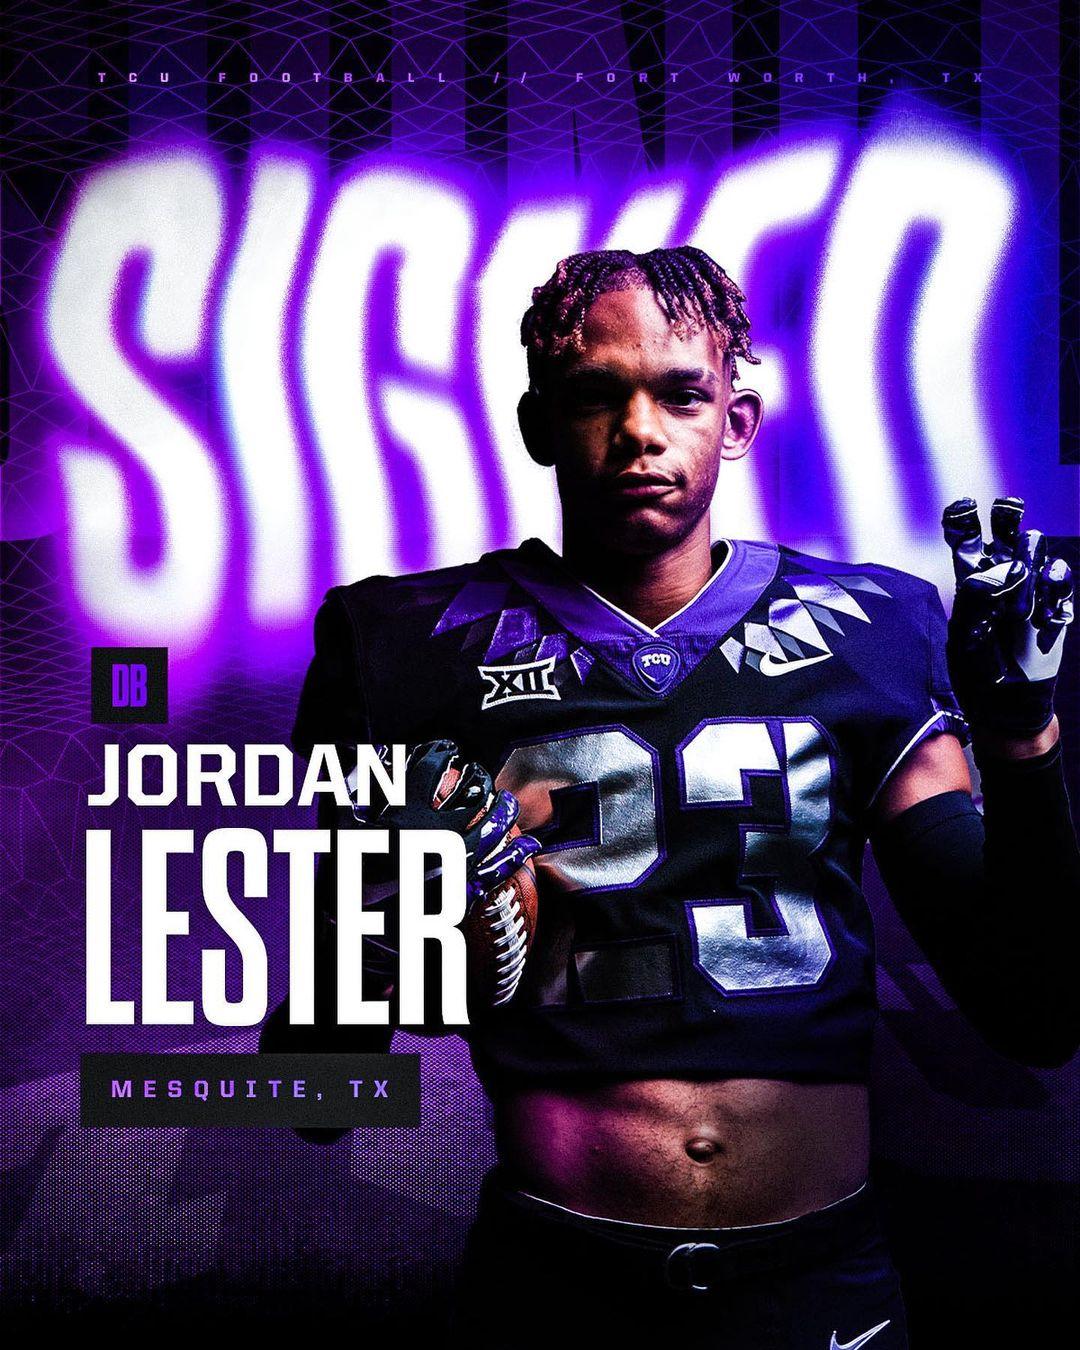 Jordan Lester Instagram Post Influencer Campaign